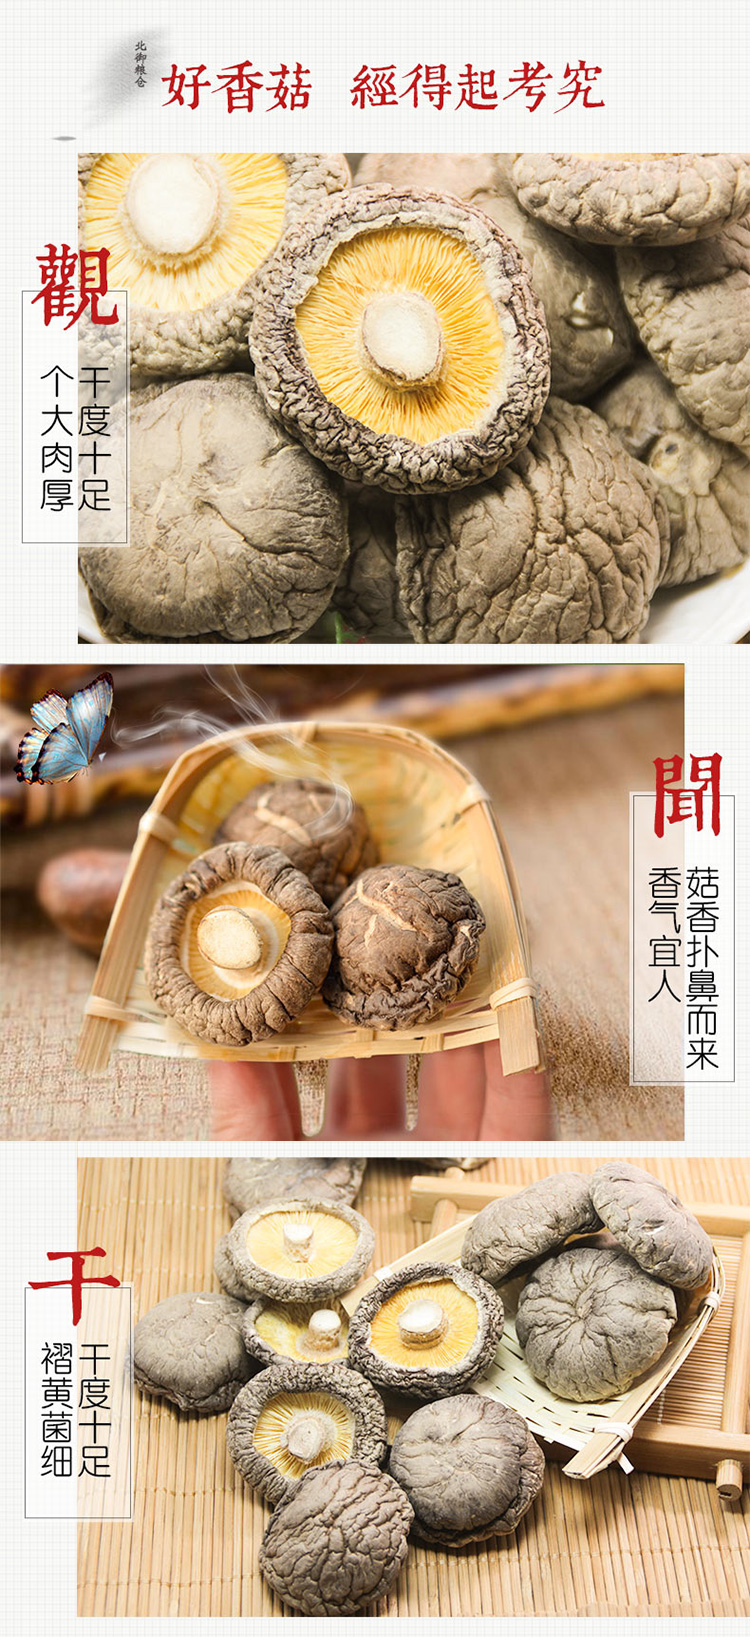 久美盛精选 大凉山 野生香菇150g